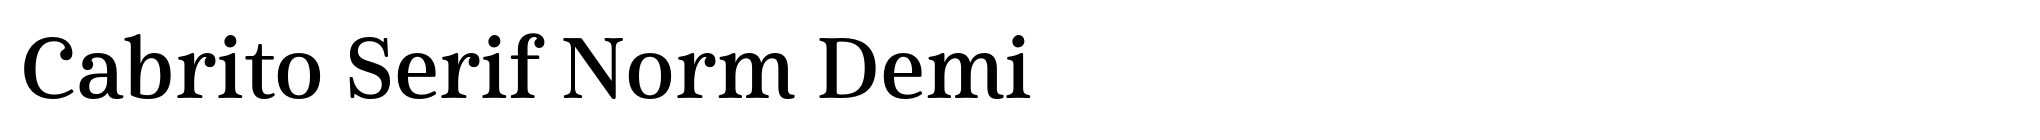 Cabrito Serif Norm Demi image